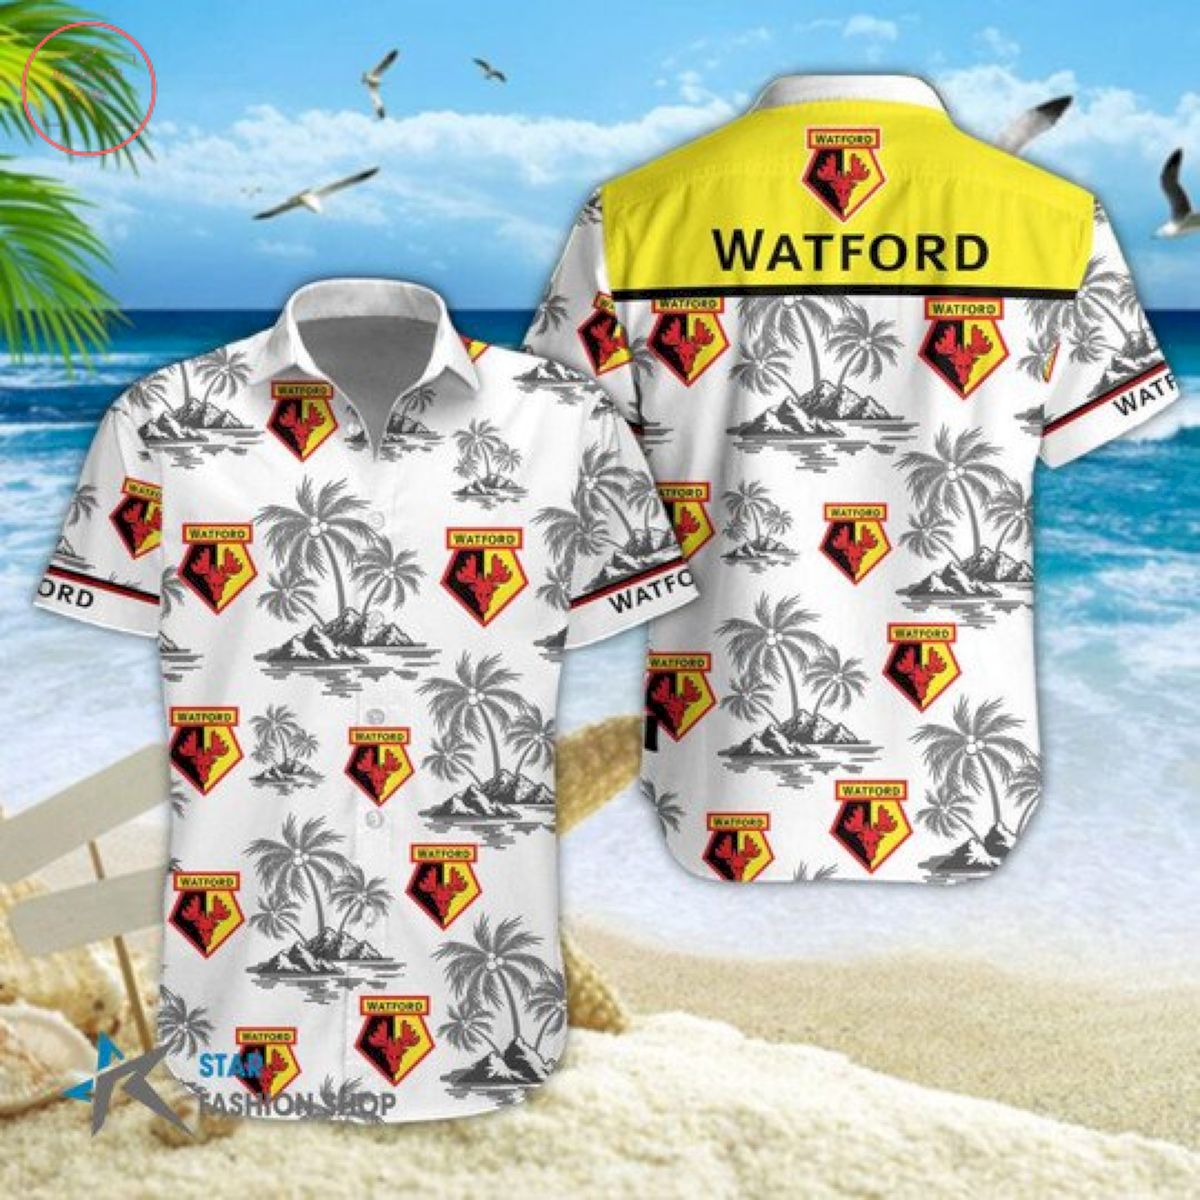 EPL Watford Floral Hawaiian Shirts and Shorts